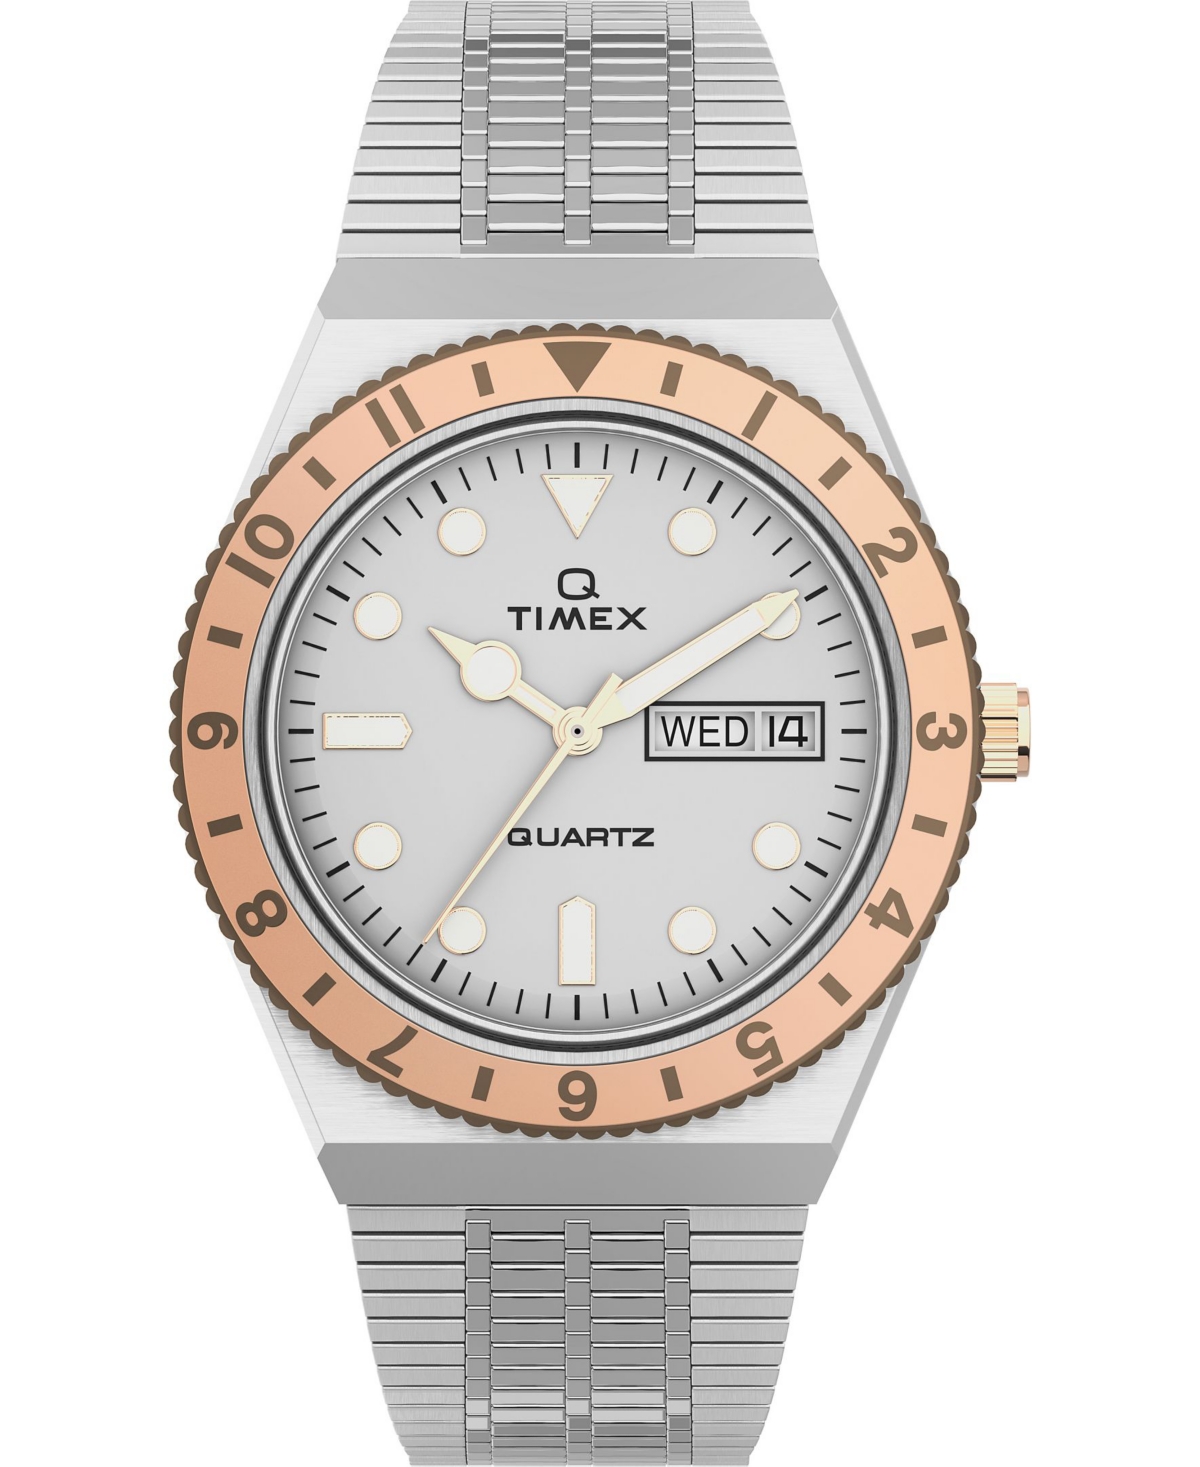 Women's Q Silver-Tone Stainless Steel Bracelet Watch 36mm - Silver-Tone